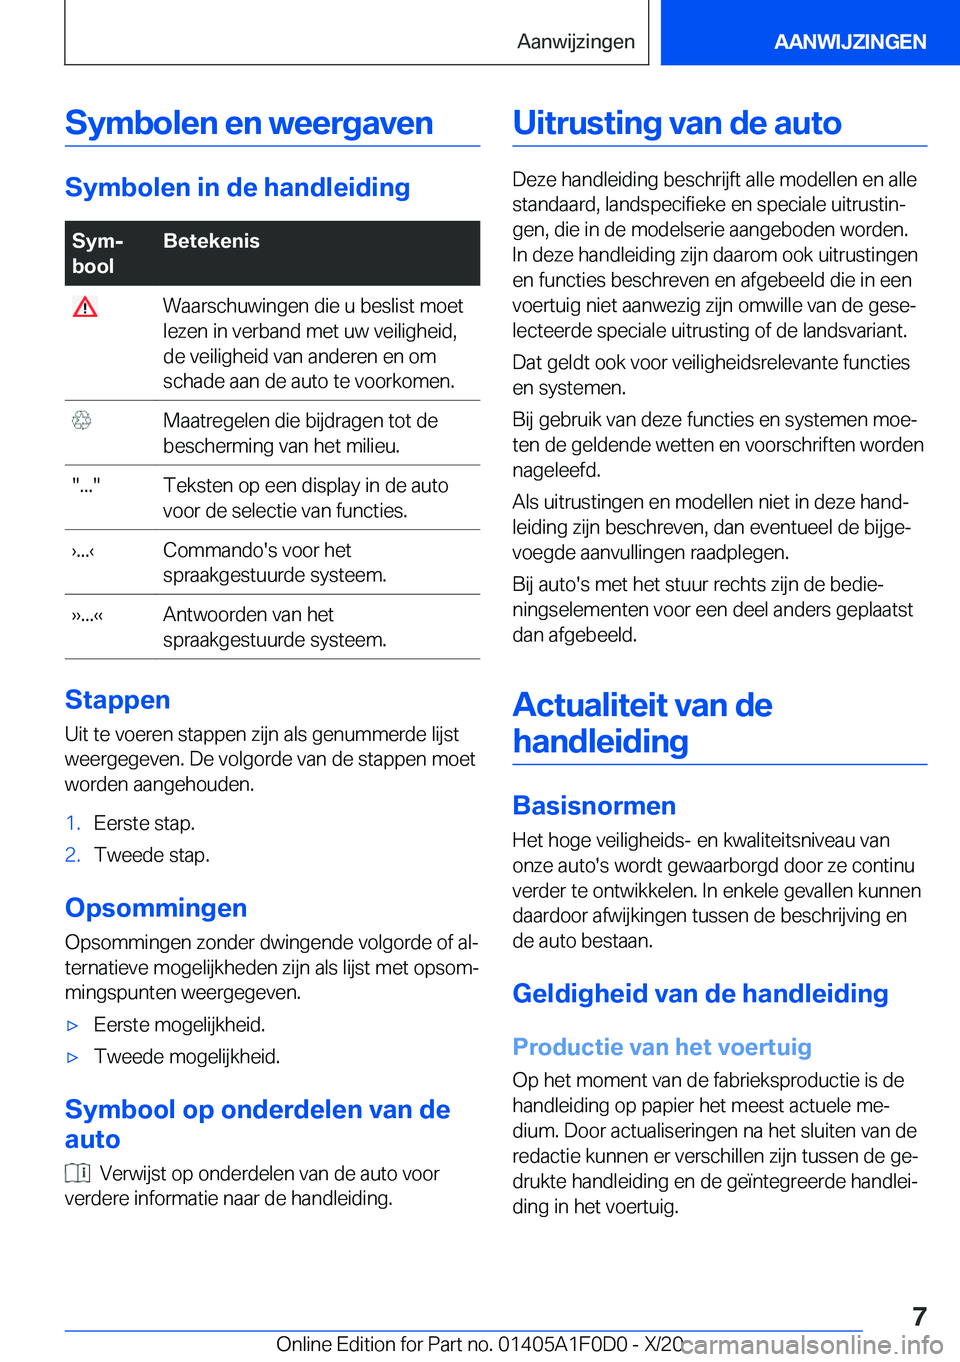 BMW X6 2021  Instructieboekjes (in Dutch) �S�y�m�b�o�l�e�n��e�n��w�e�e�r�g�a�v�e�n
�S�y�m�b�o�l�e�n��i�n��d�e��h�a�n�d�l�e�i�d�i�n�g
�S�y�mj
�b�o�o�l�B�e�t�e�k�e�n�i�s��W�a�a�r�s�c�h�u�w�i�n�g�e�n��d�i�e��u��b�e�s�l�i�s�t��m�o�e�t
